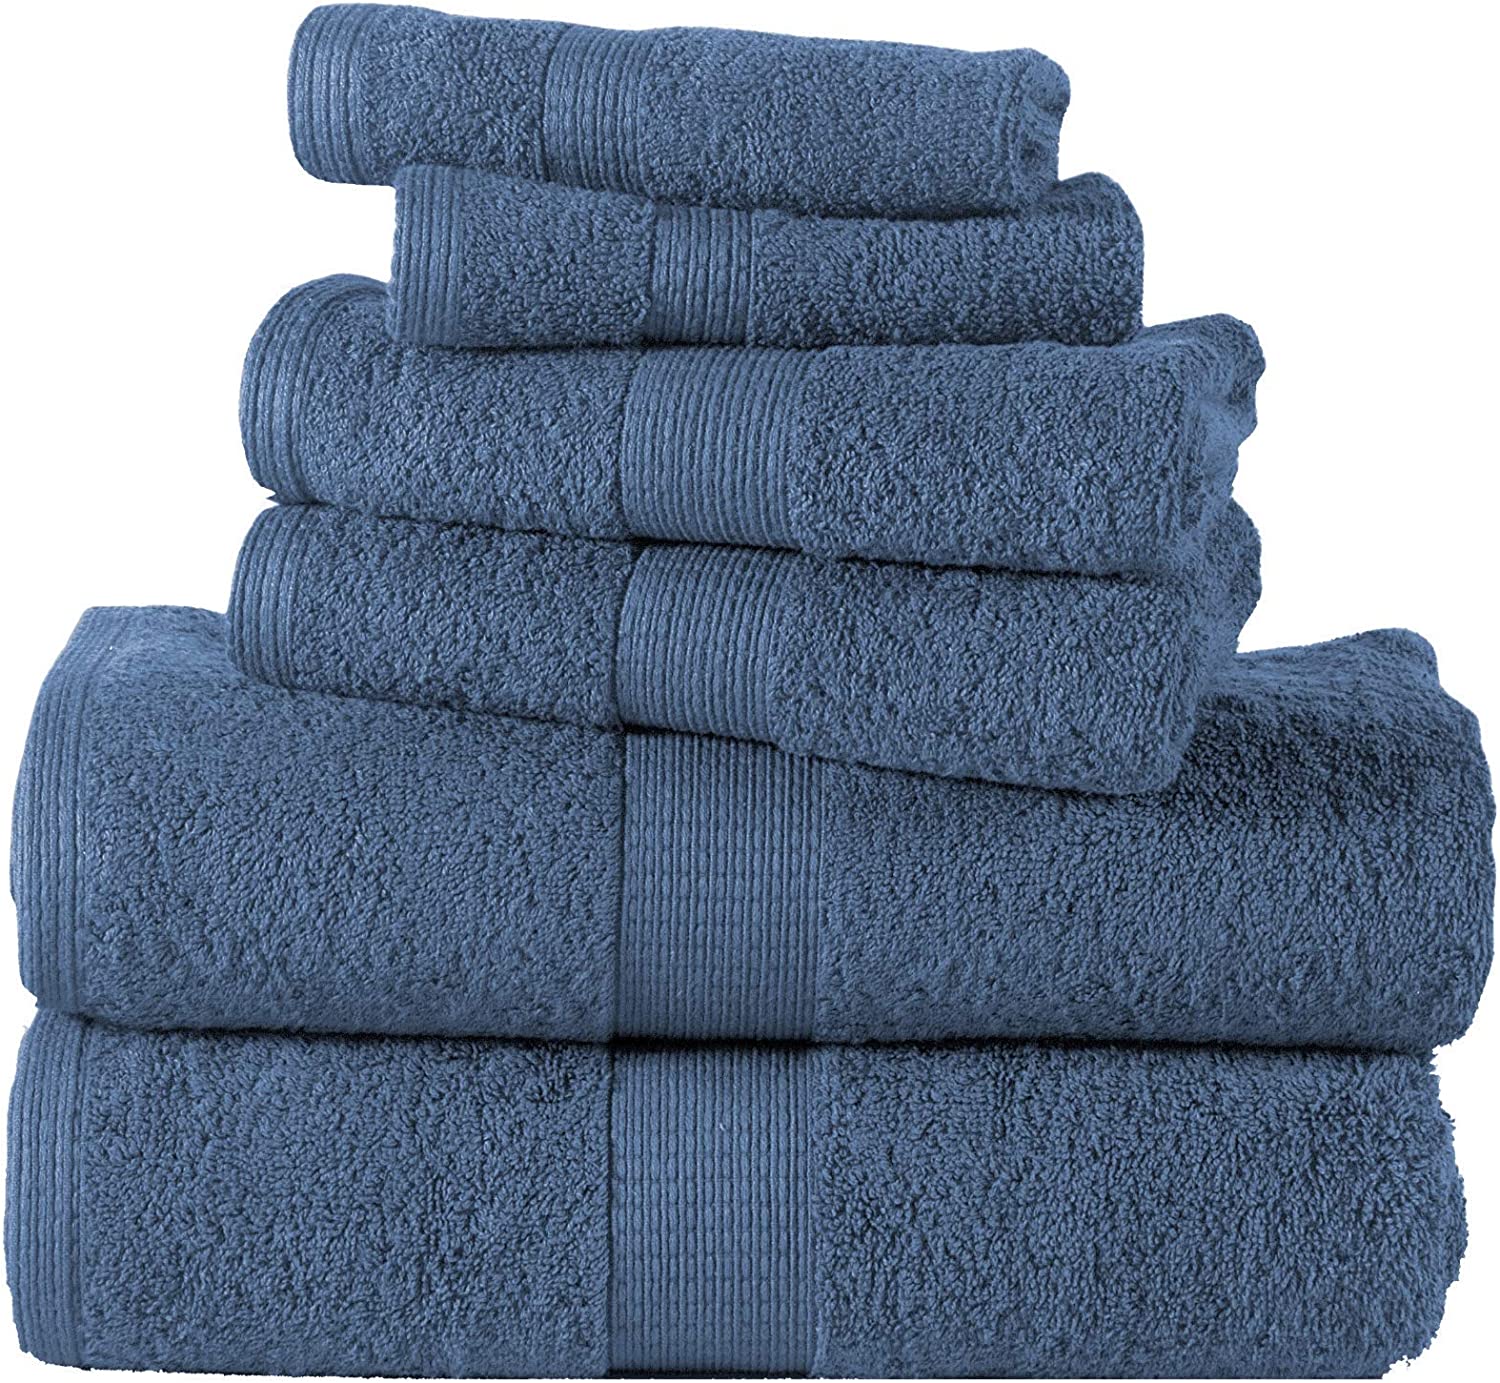 LANE LINEN 6 Piece Bath Towel Set - 100% Cotton Bathroom Towels Extra Large  Hote